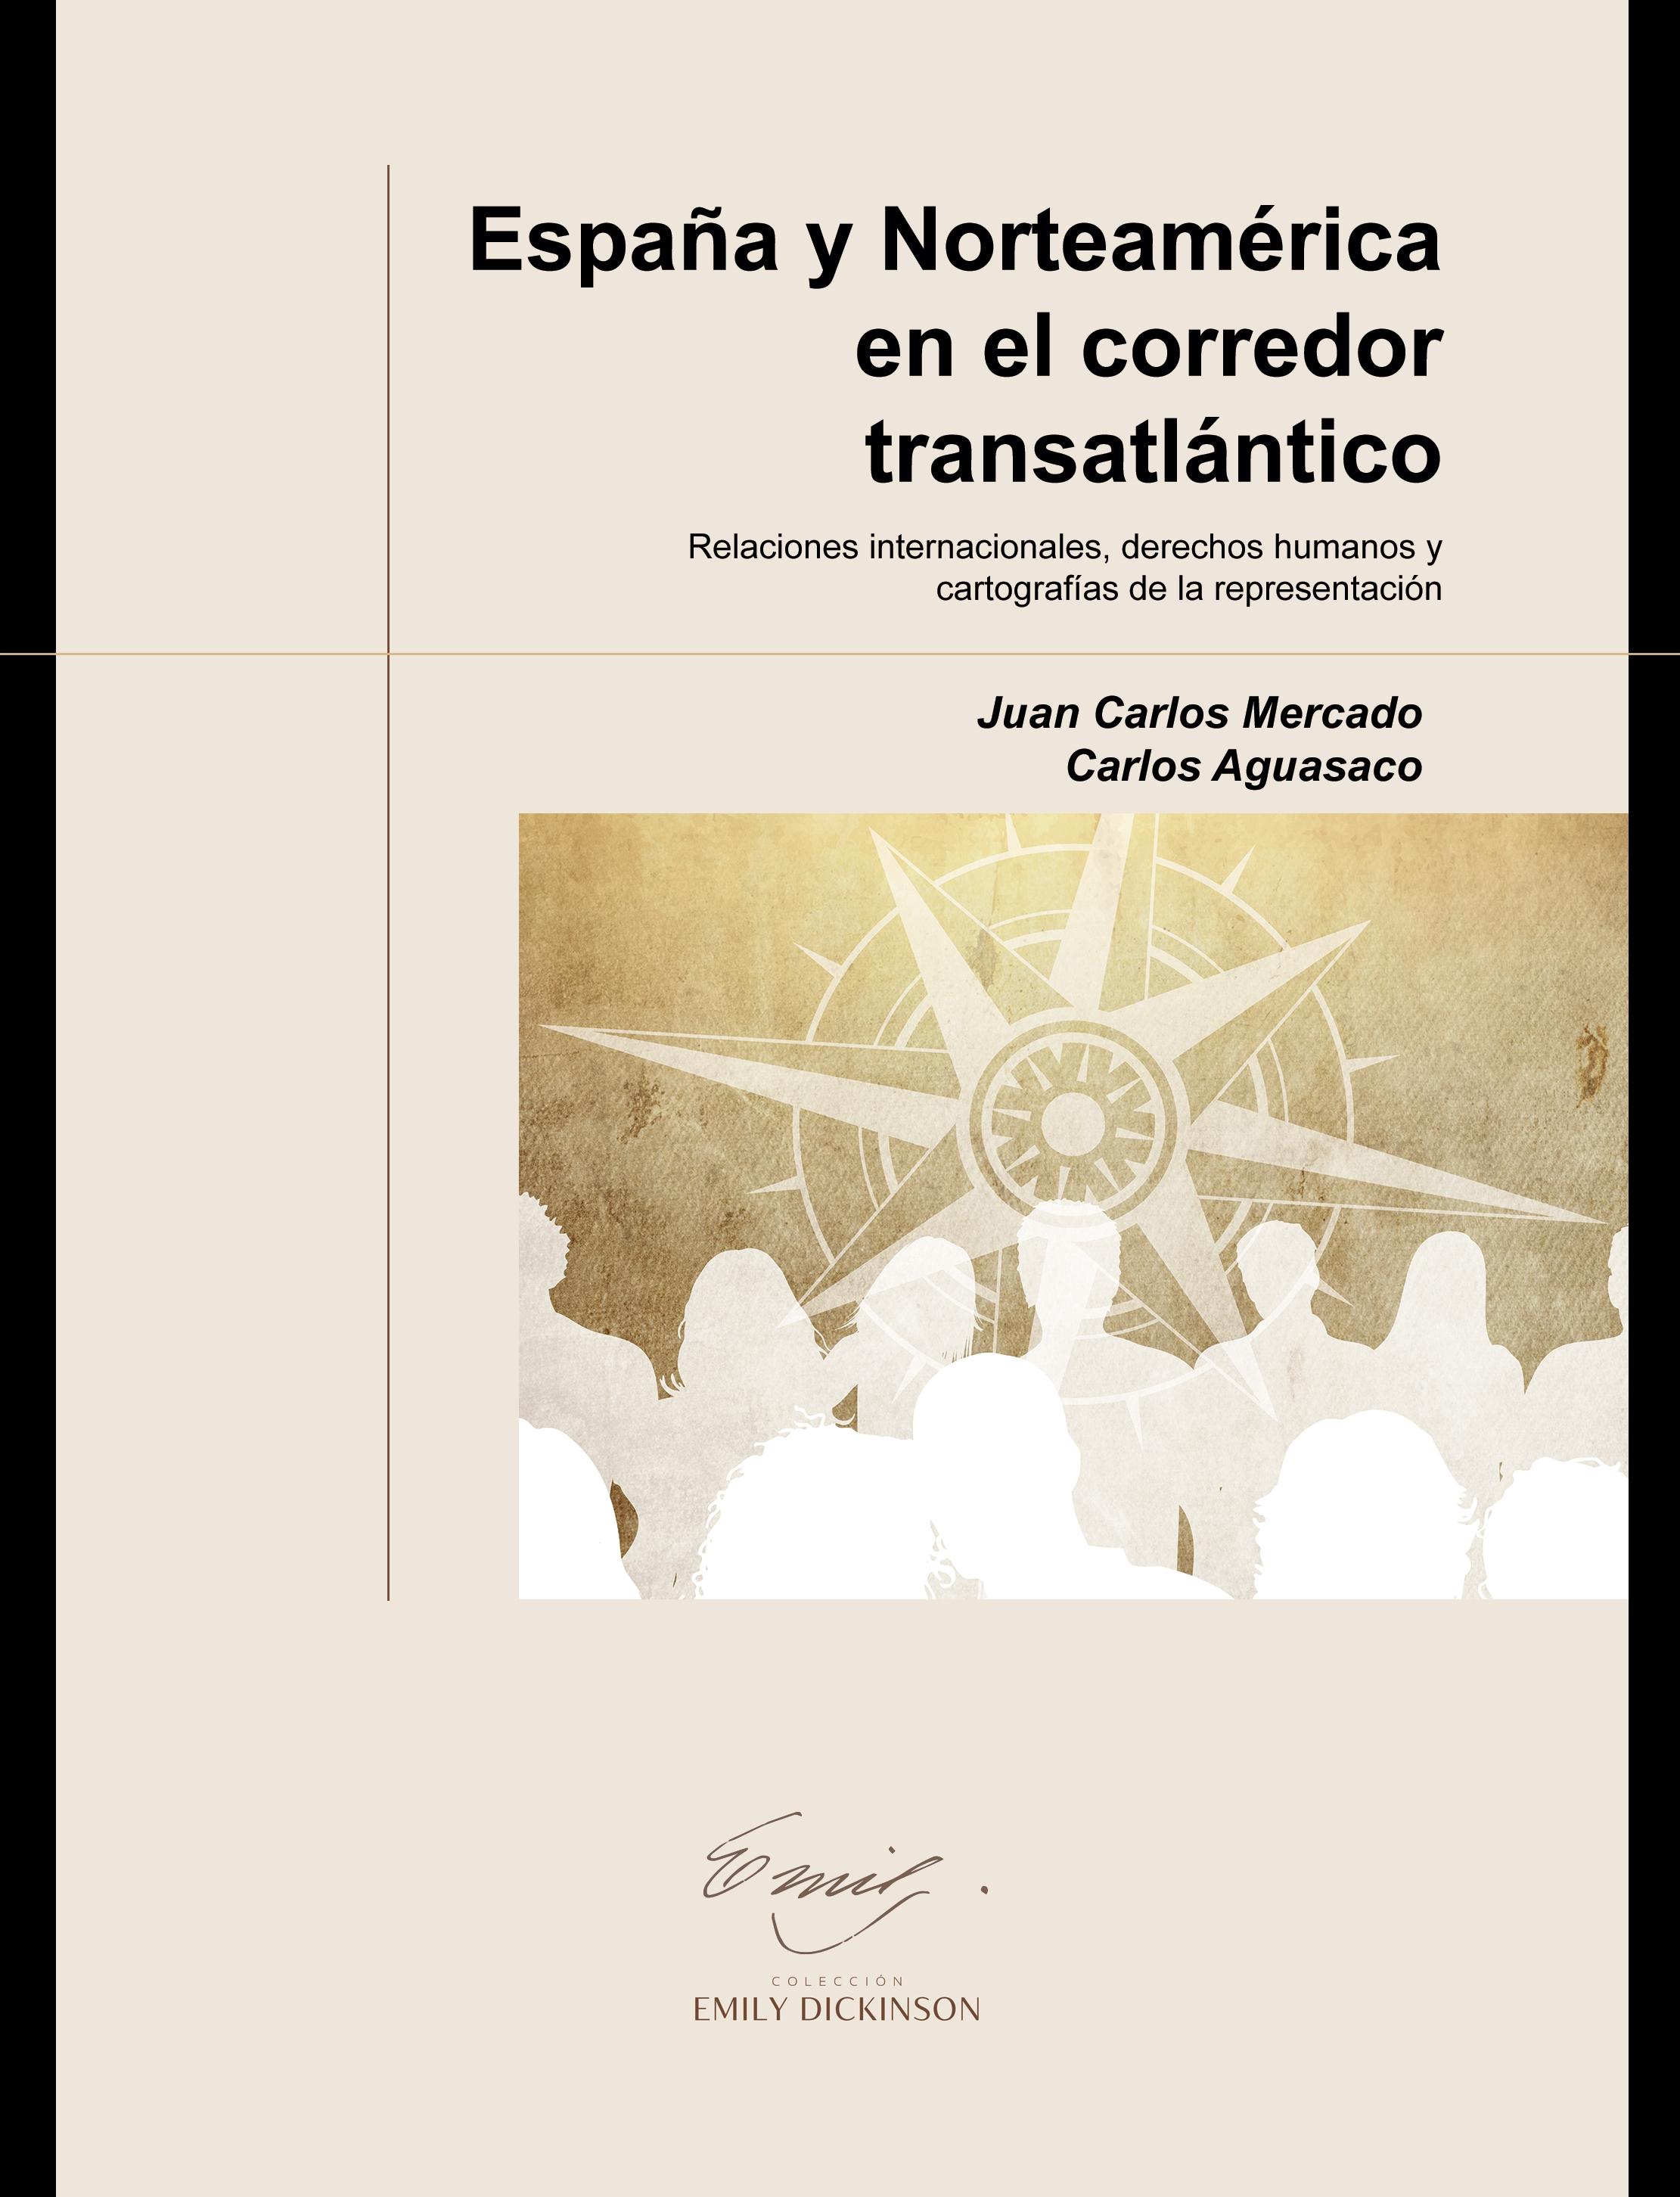 España y Norteamérica en el corredor transatlántico "Relaciones internacionales, derechos humanos y cartografías de la representación"